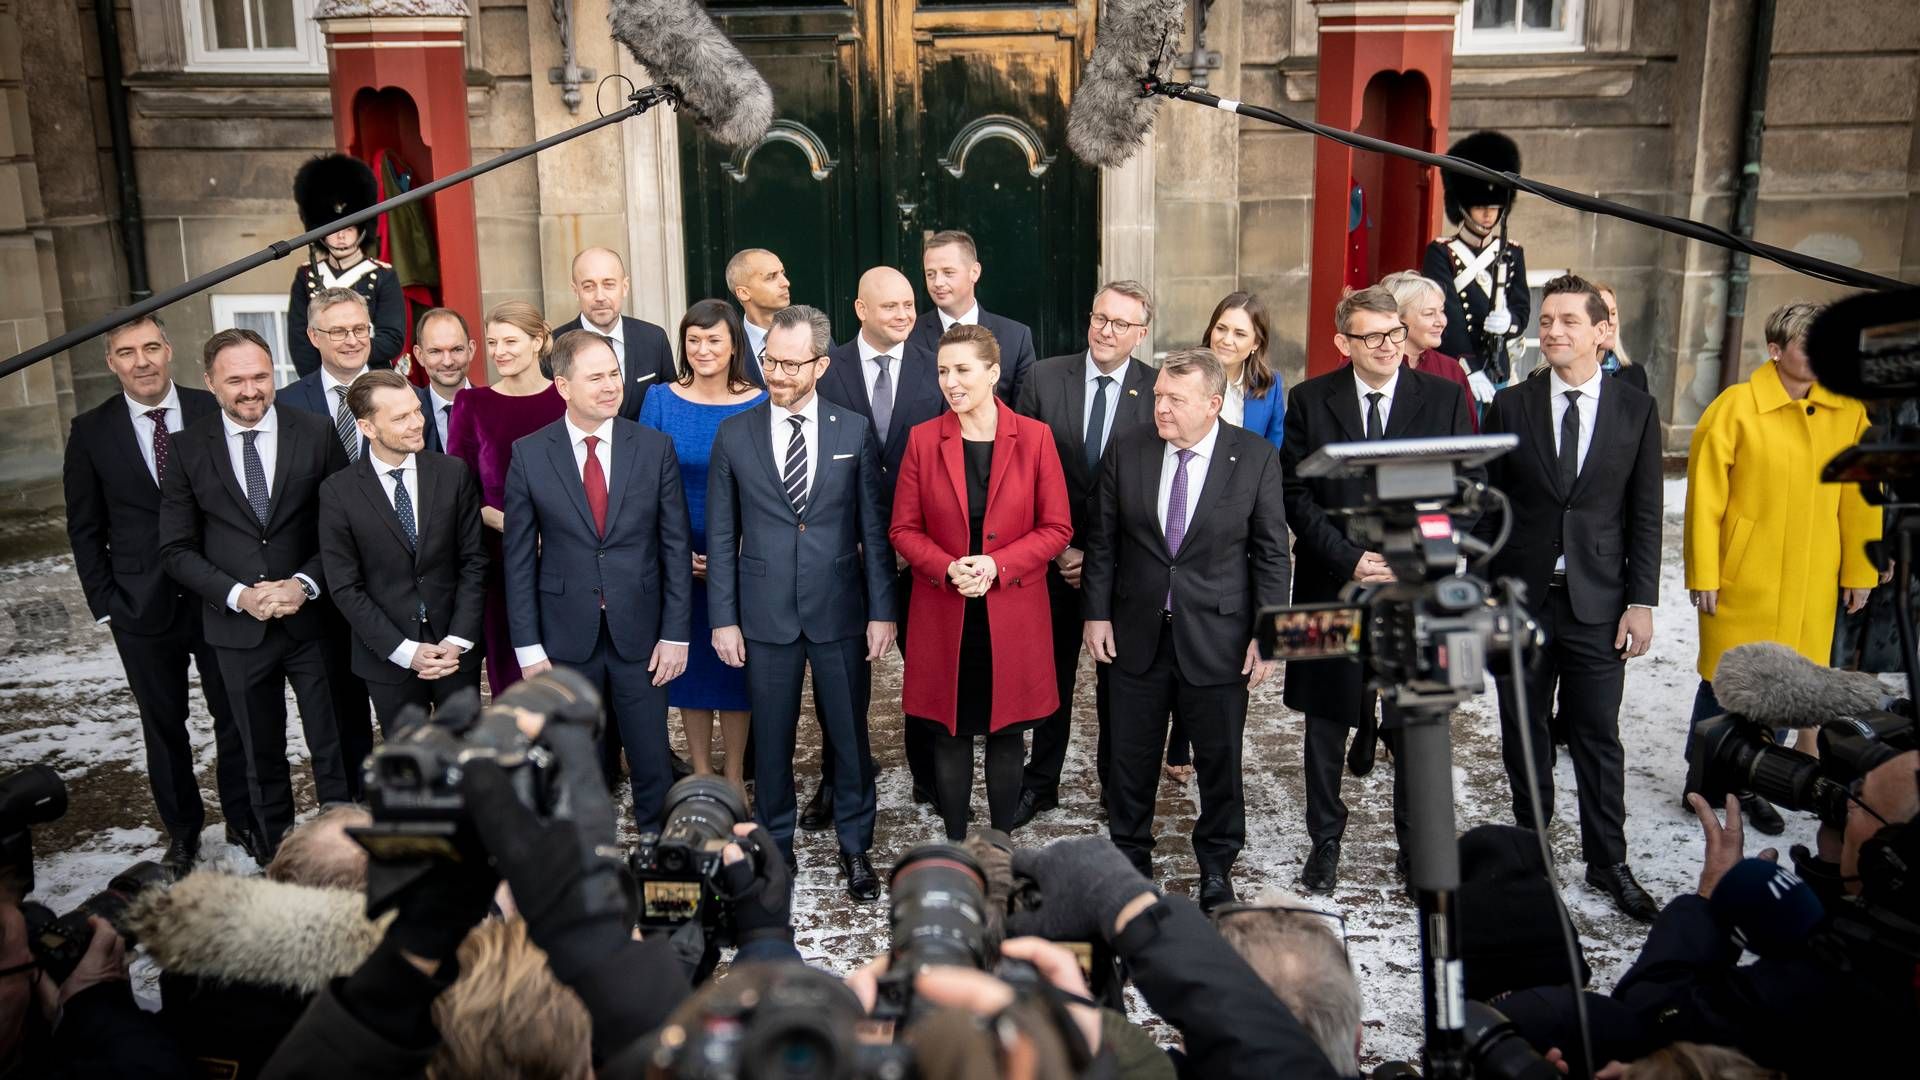 Den nye SVM-regering blev præsenteret på Amalienborg Slotsplads i København torsdag 15. december. | Foto: Mads Claus Rasmussen